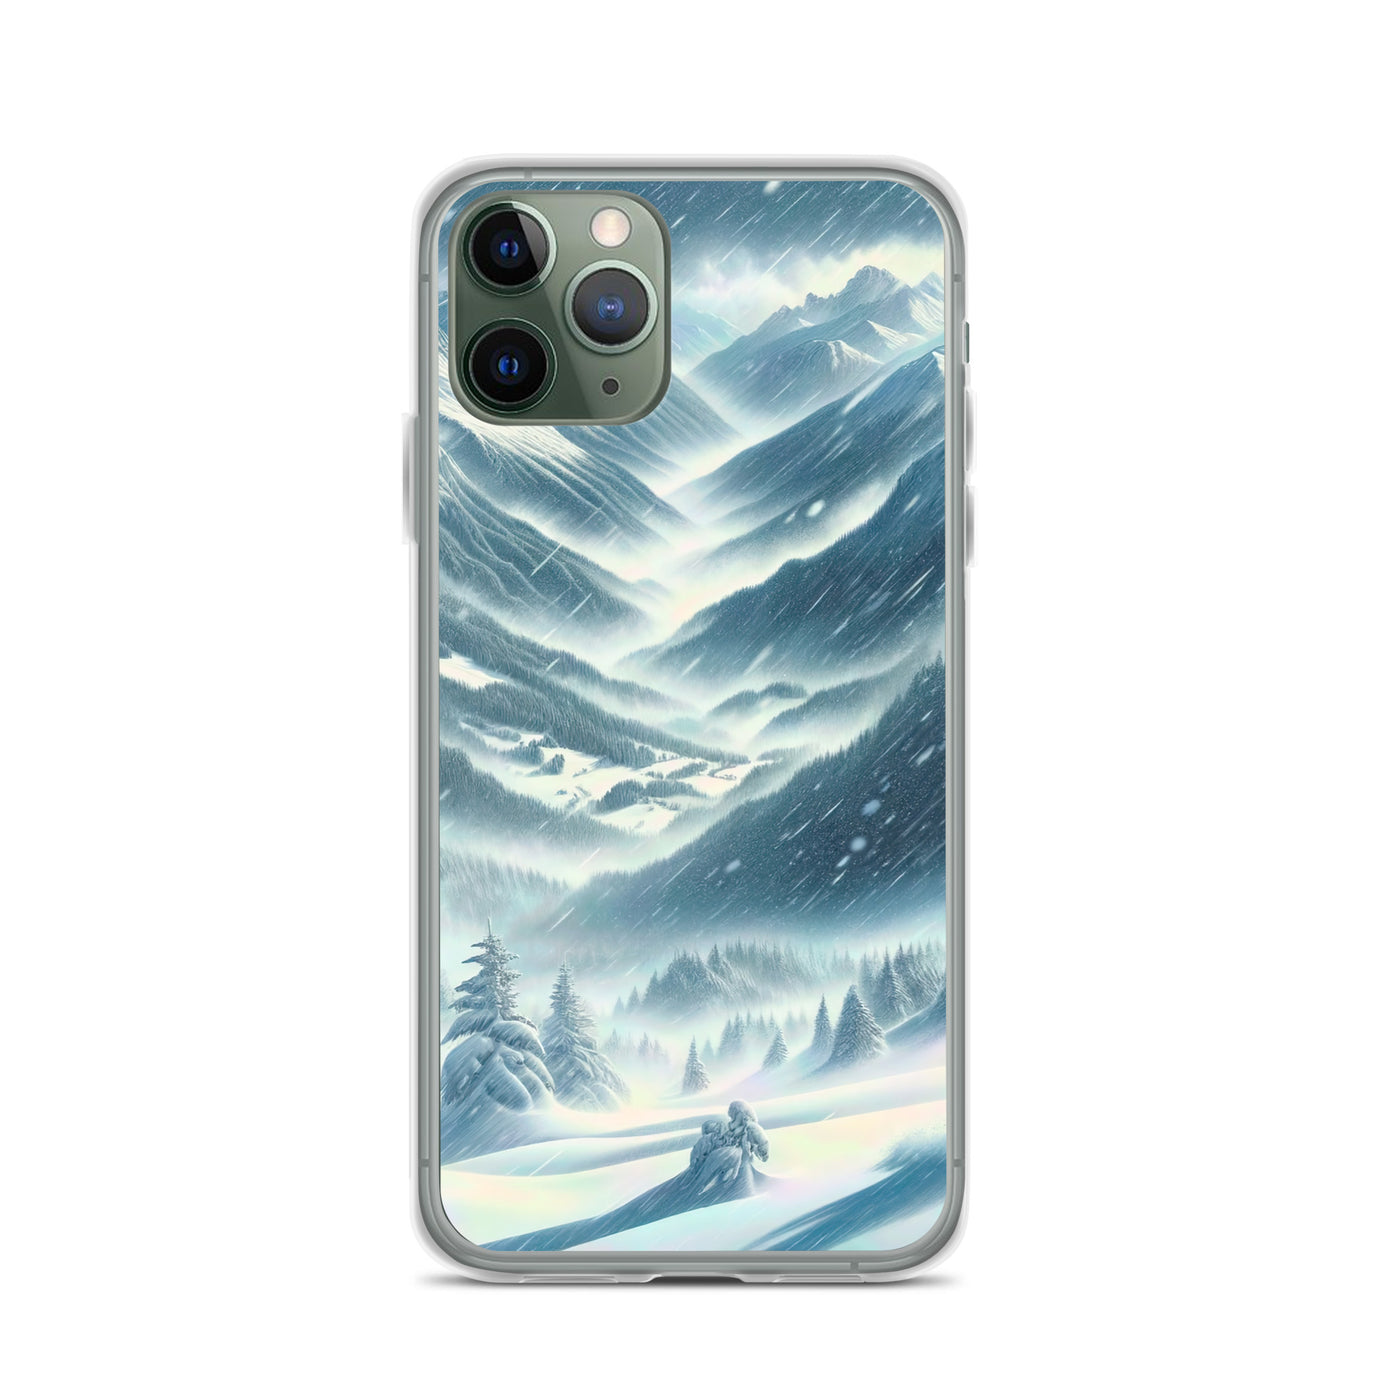 Alpine Wildnis im Wintersturm mit Skifahrer, verschneite Landschaft - iPhone Schutzhülle (durchsichtig) klettern ski xxx yyy zzz iPhone 11 Pro